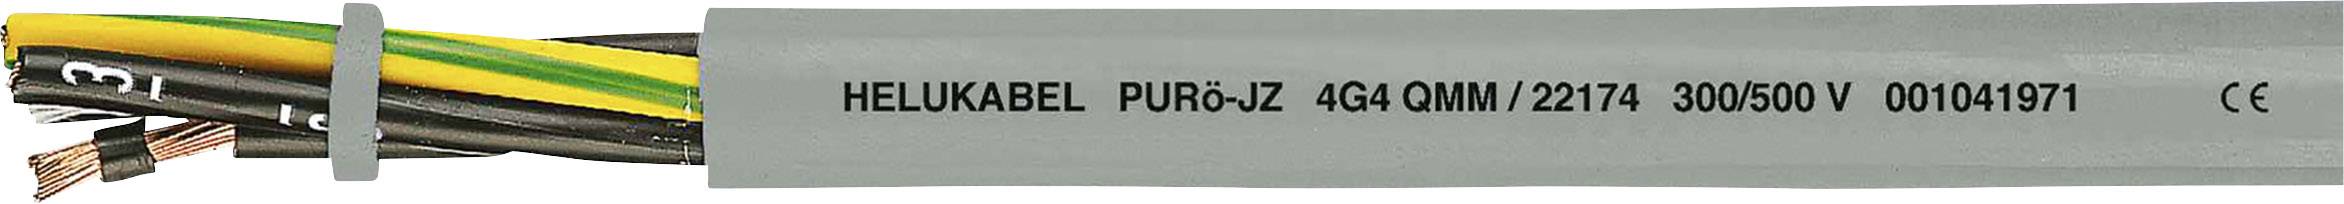 HELUKABEL PURö-JZ Steuerleitung 4 G 2.50 mm² Grau 22166-1000 1000 m